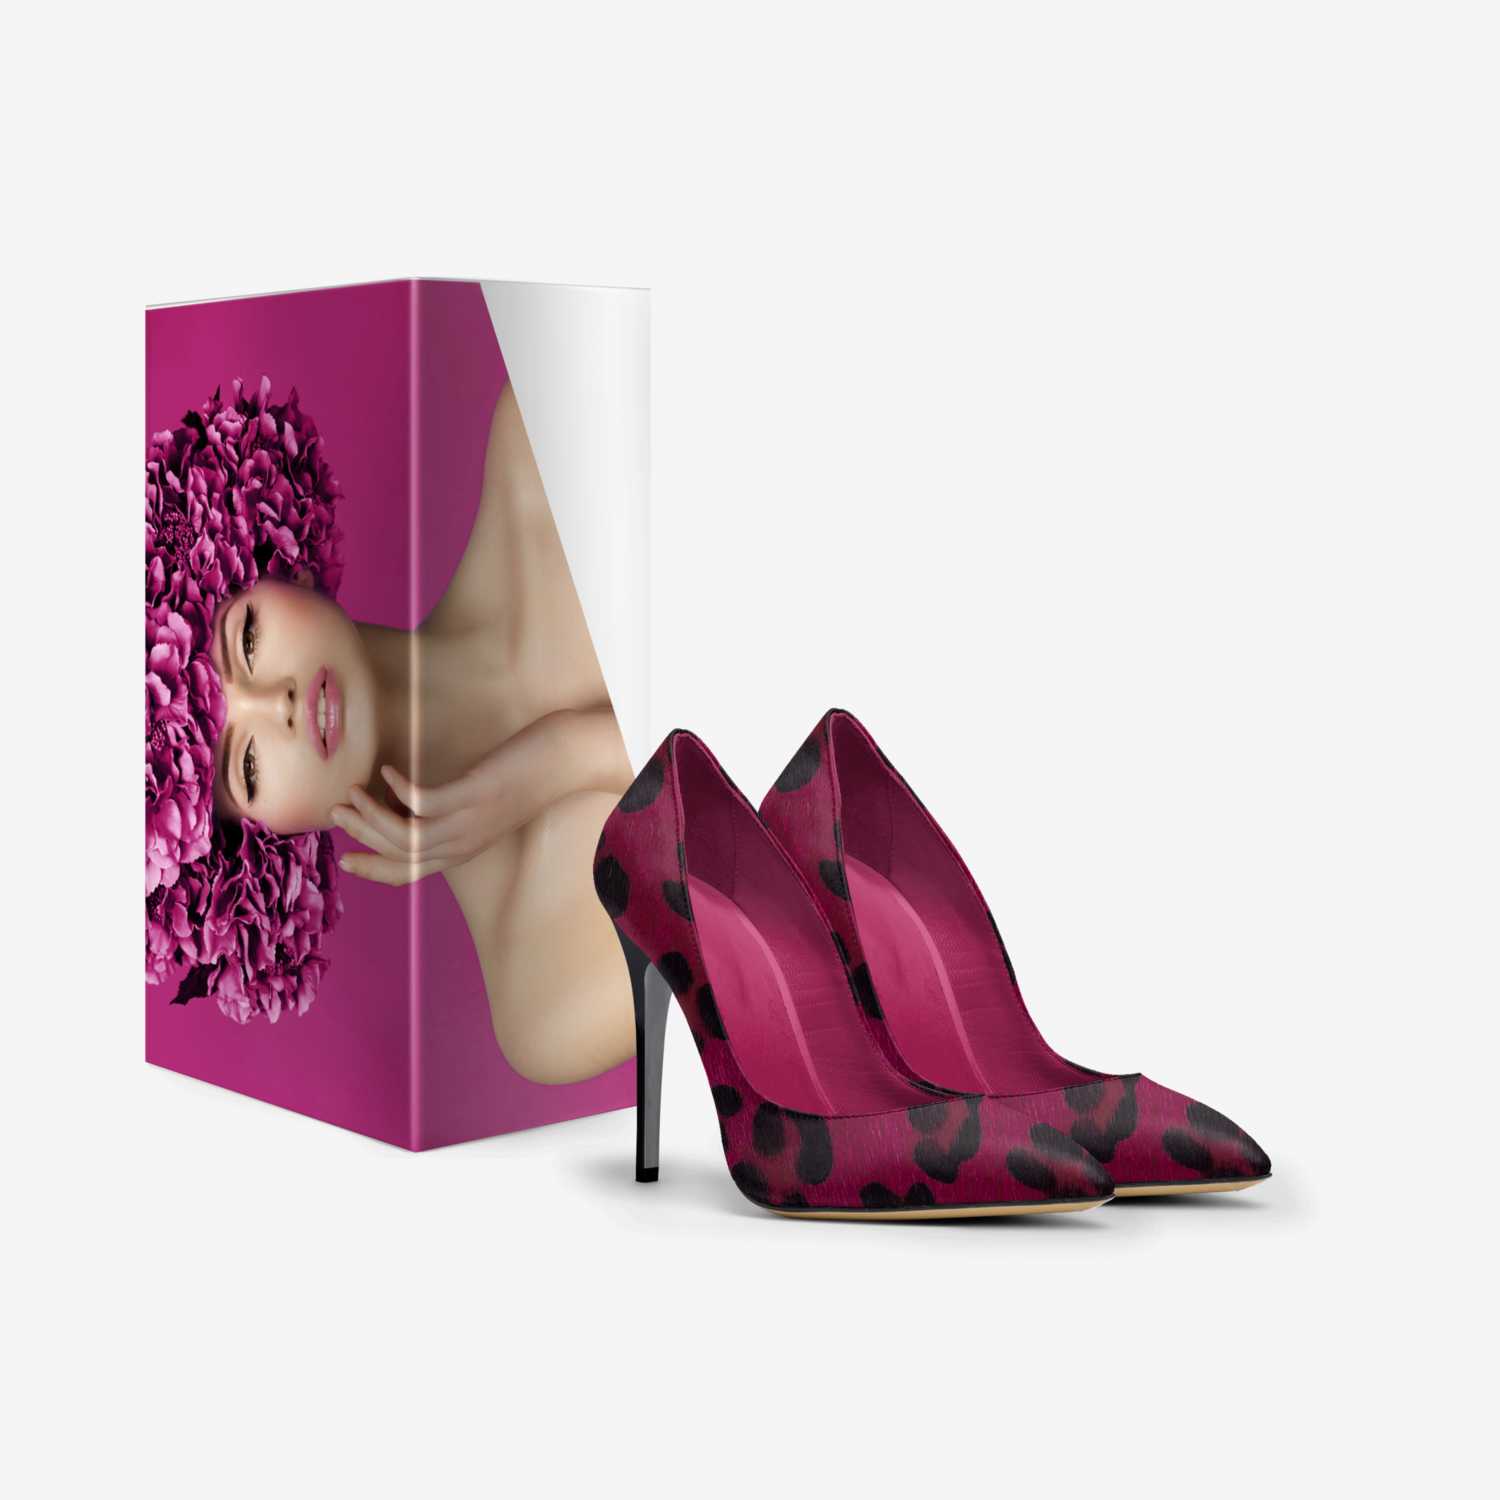 Nicole Giovanna  custom made in Italy shoes by Latoya Martin | Box view